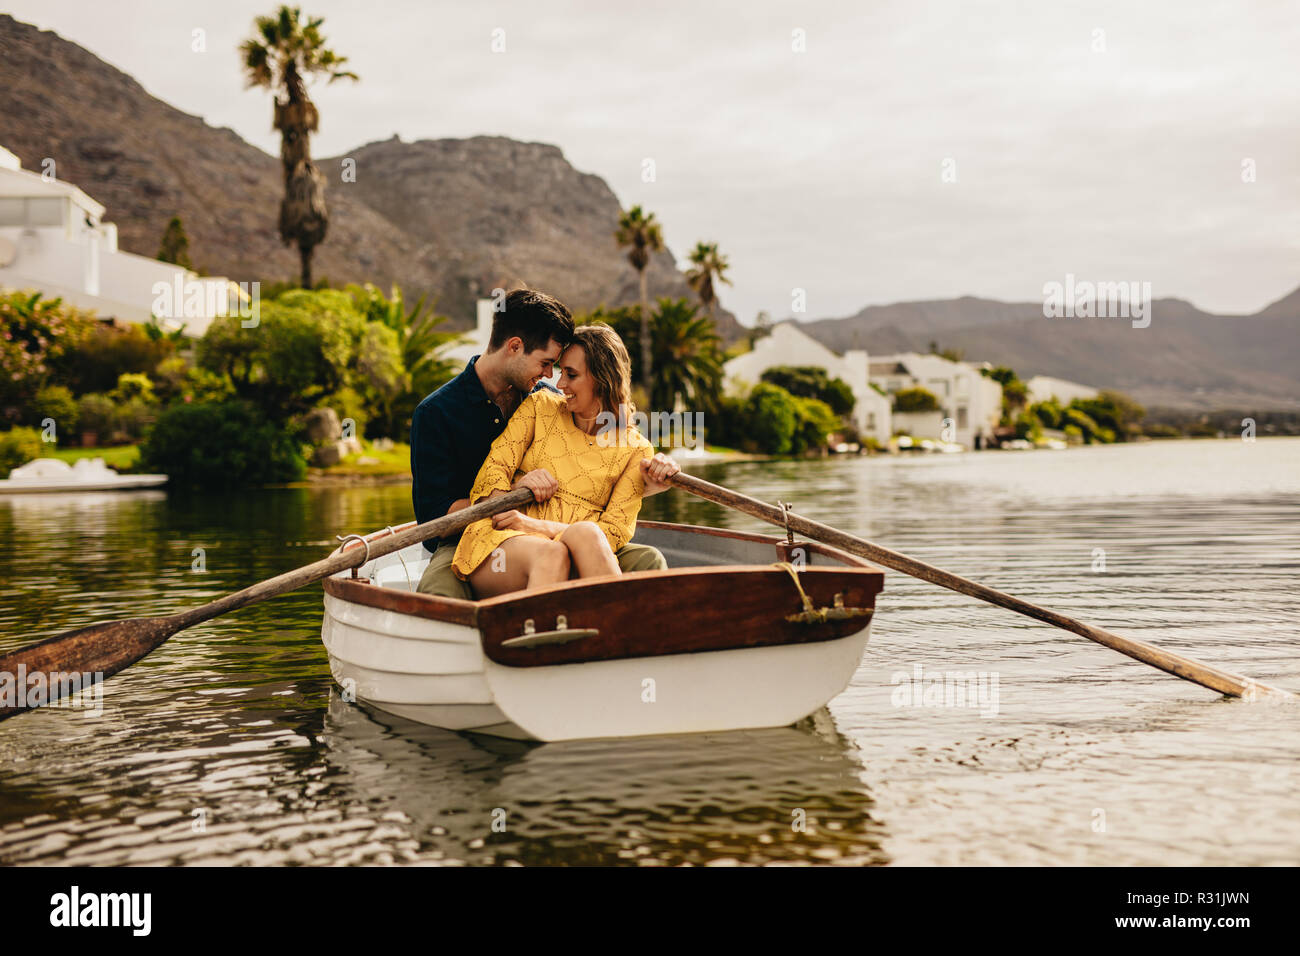 Junges Paar sitzen gemeinsam in einem Boot ihre Köpfe zu berühren. Paar Spaß auf einem Boot Datum in einem See mit Hügeln und Häuser im Hintergrund. Stockfoto